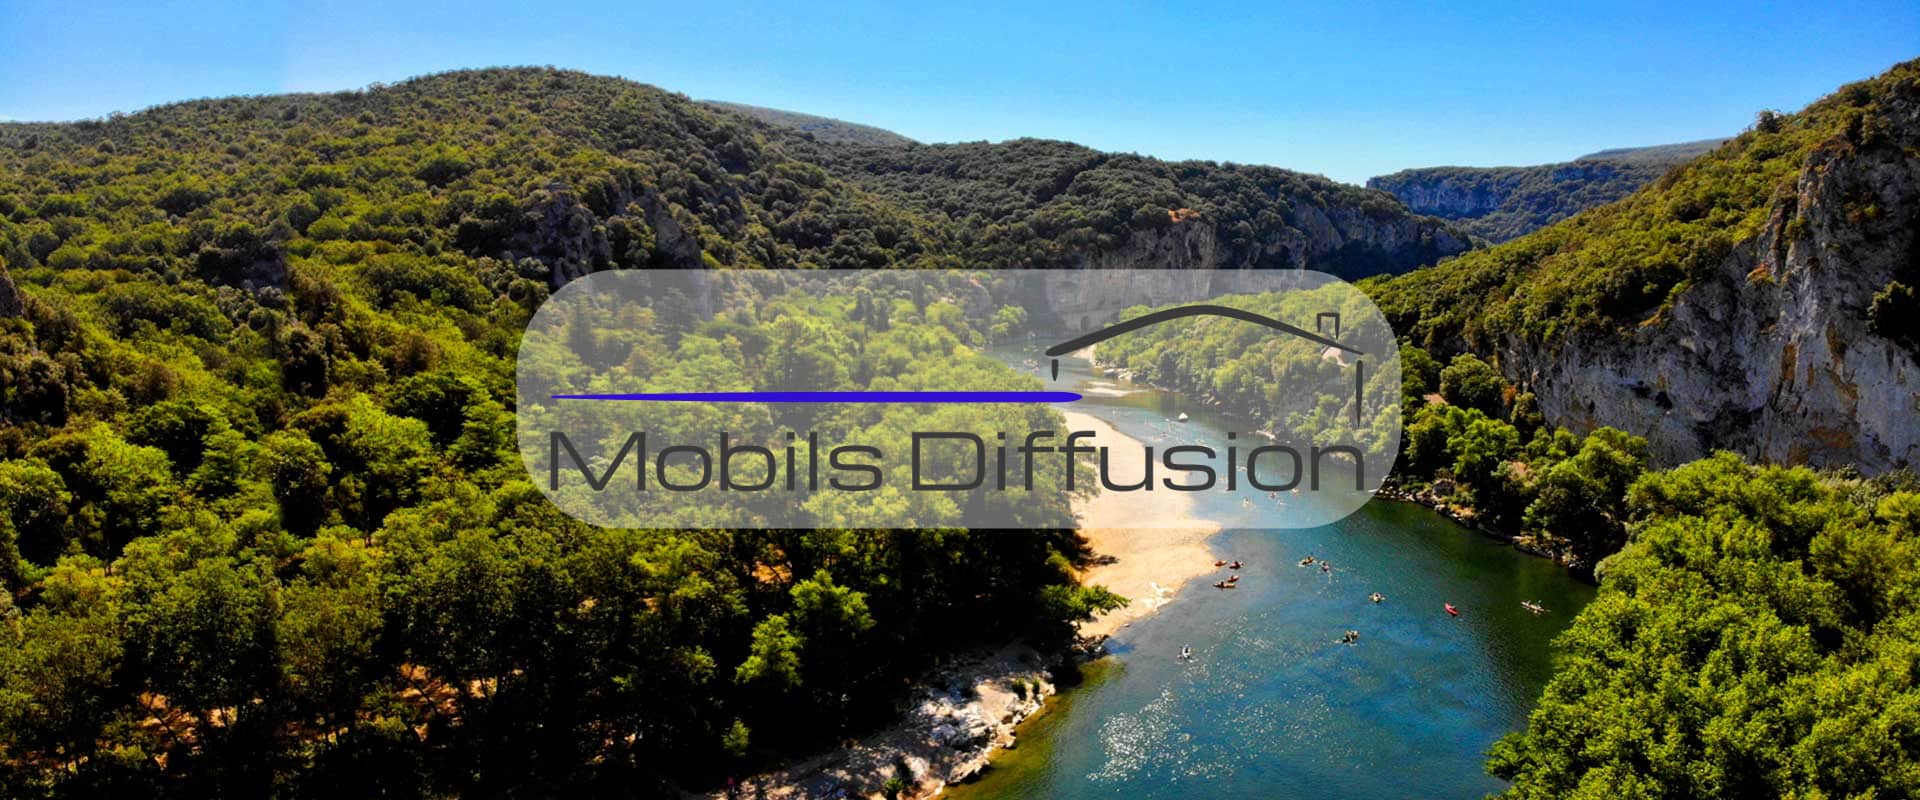 Mobils Diffusion - Terrain pour mobil-home au camping en Auvergne-Rhône-Alpes dans la vallée ardéchoise